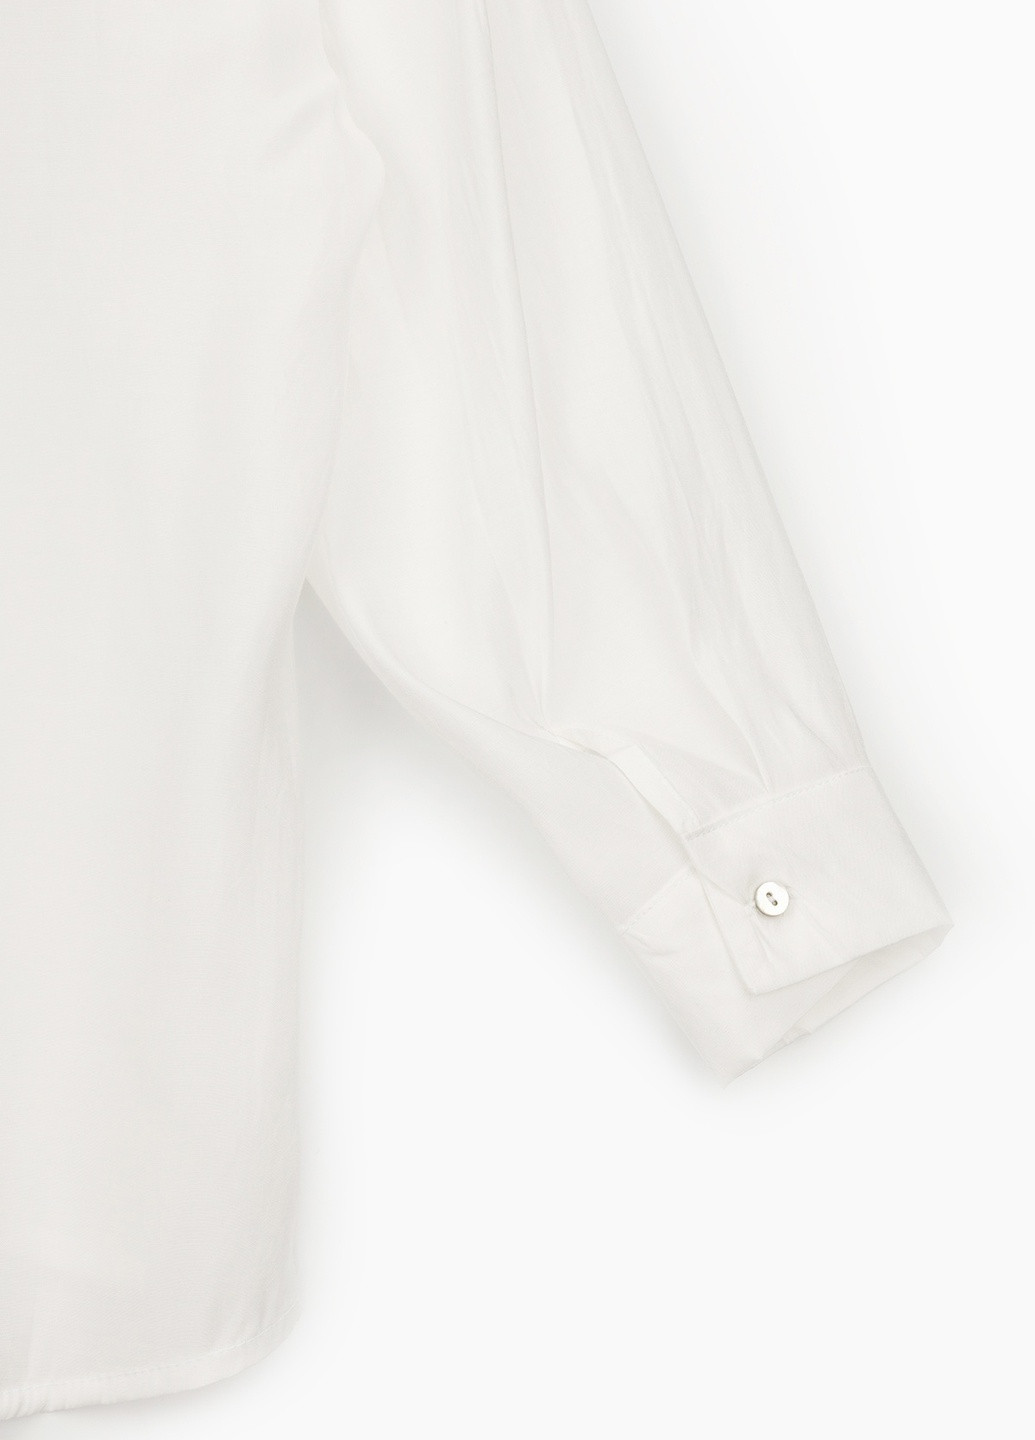 Біла демісезонна блуза Firesh